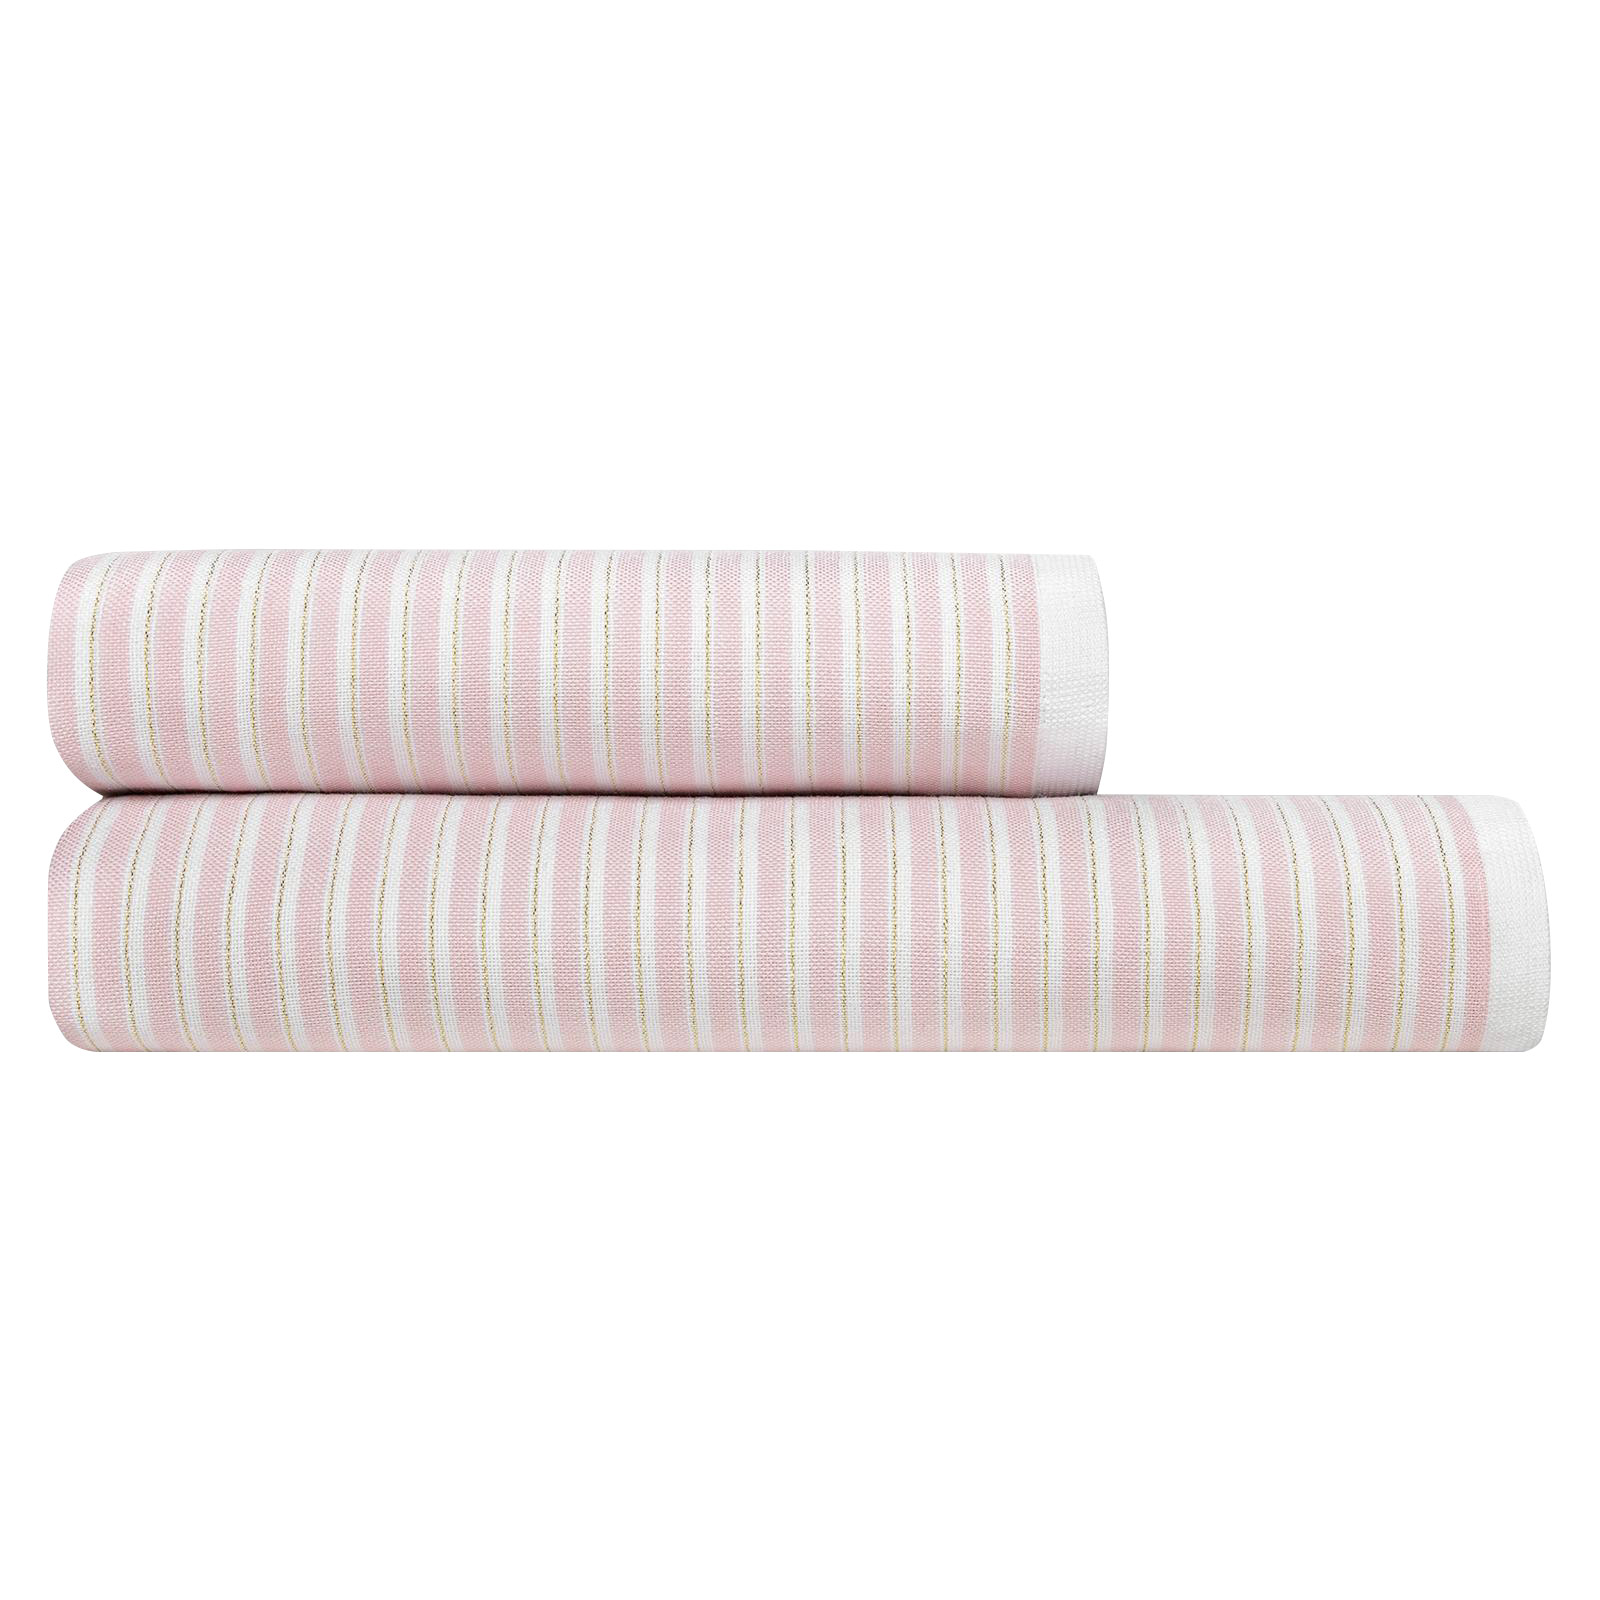 Комплект полотенец Togas Рене белый/розовый/золотой 2 пр 50х100/70х140 комплект махровых полотенец 50x90 70х140 см 2 шт